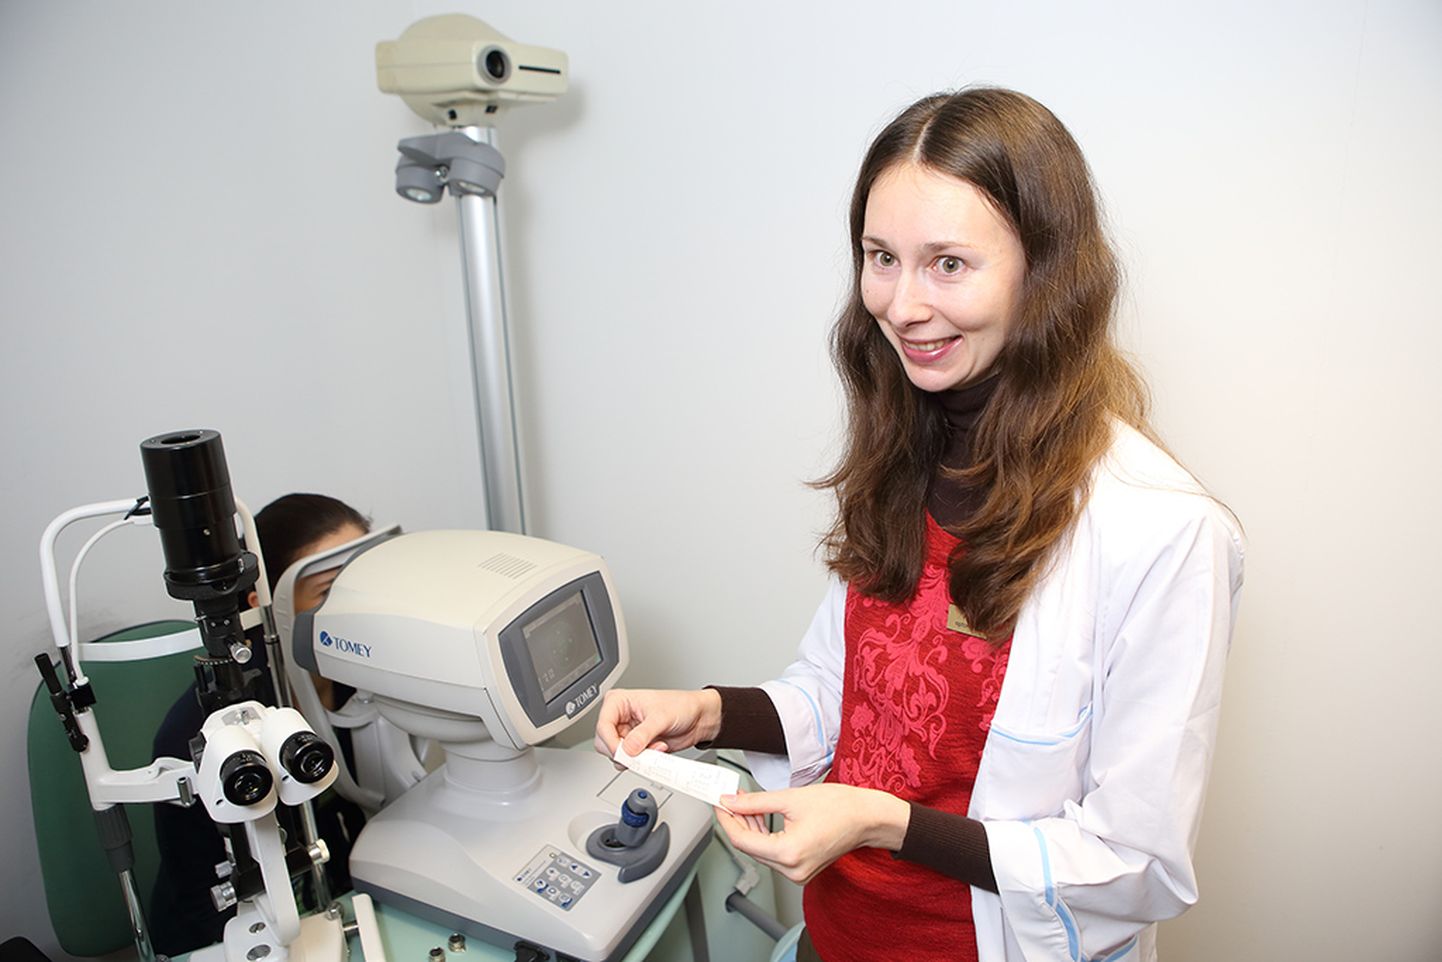 PANEB PAIKA: Anu Abel selgitab, et optometrist on pädev silmanägemist korrigeerima, kuid silmahaiguste ravimisega nad ei tegele. Foto: Sander Ilvest